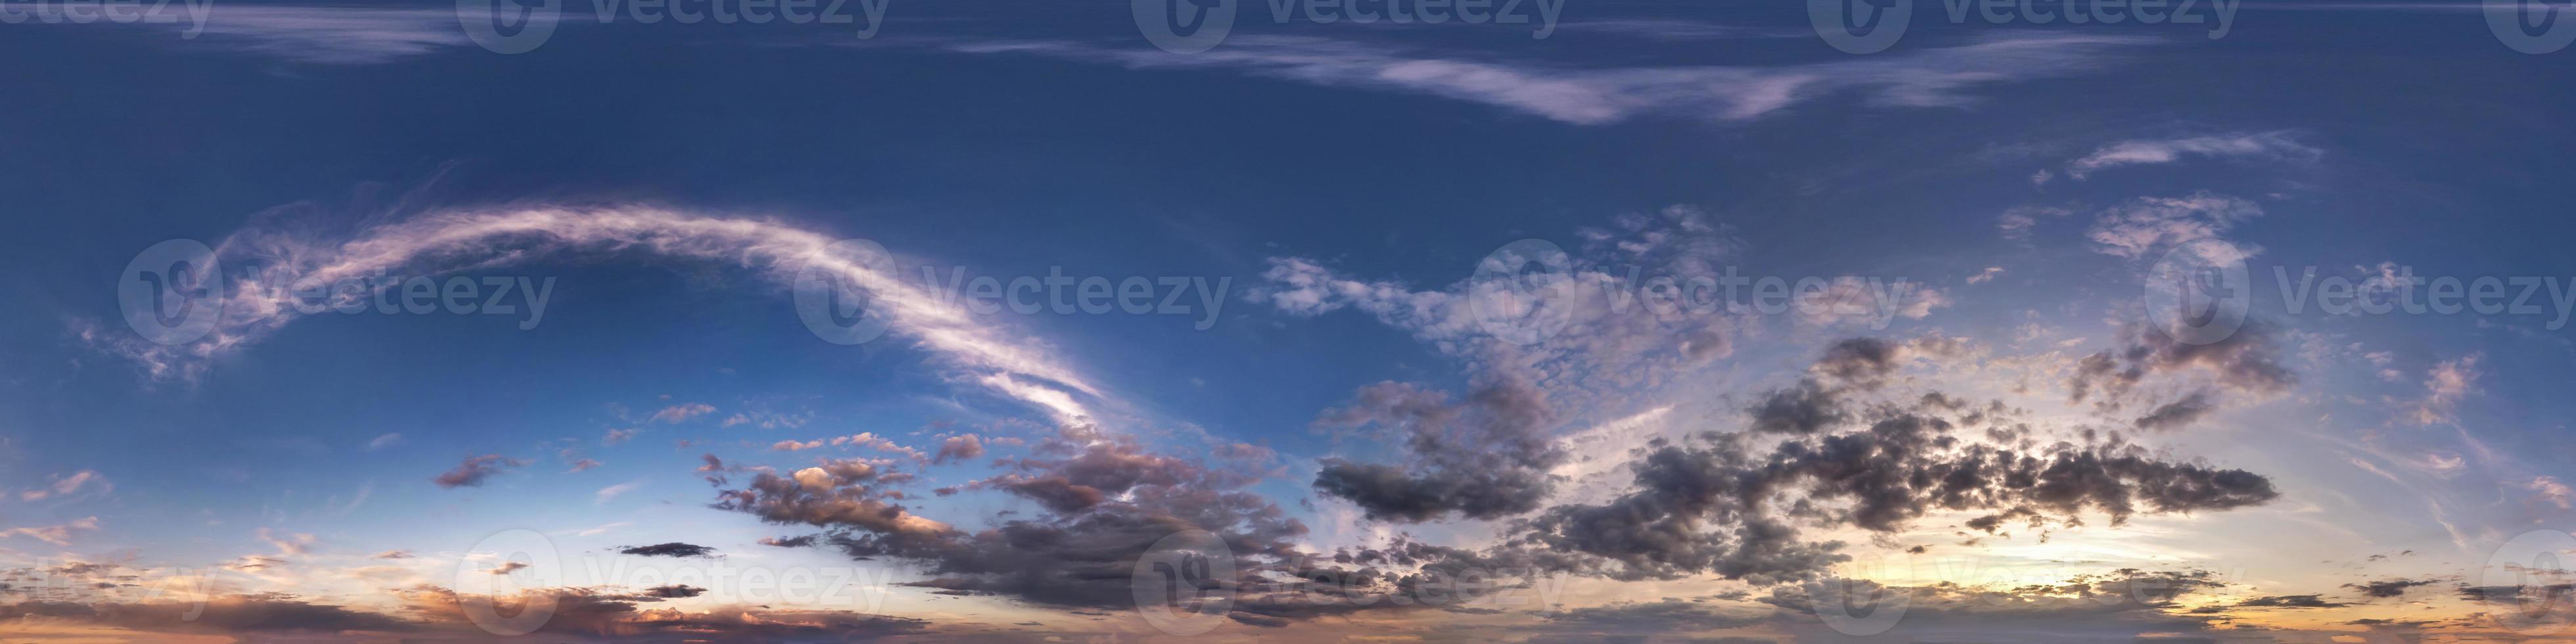 panorama hdri senza soluzione di continuità vista angolare a 360 gradi cielo blu della sera con bellissime nuvole prima del tramonto con zenit per l'uso in grafica 3d o sviluppo di giochi come sky dome o modifica riprese con drone foto